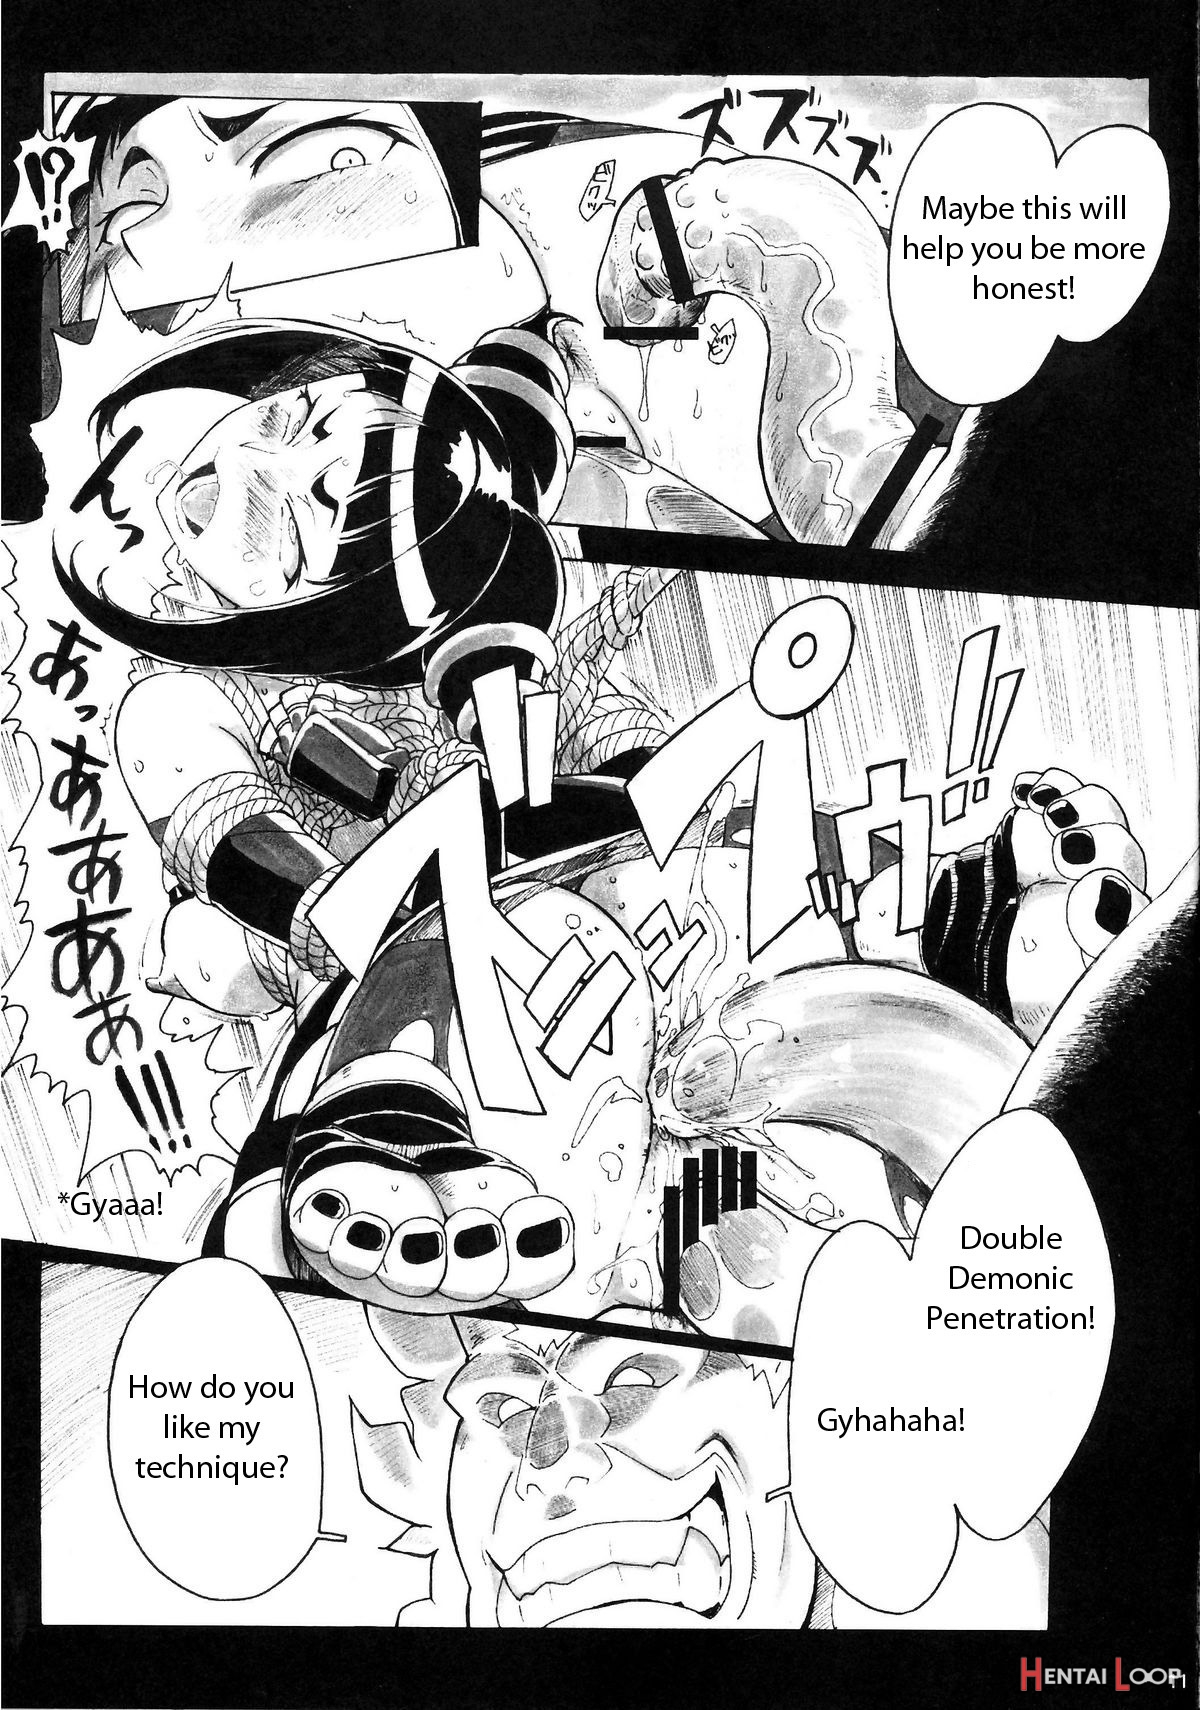 Kuroshikishioki page 10